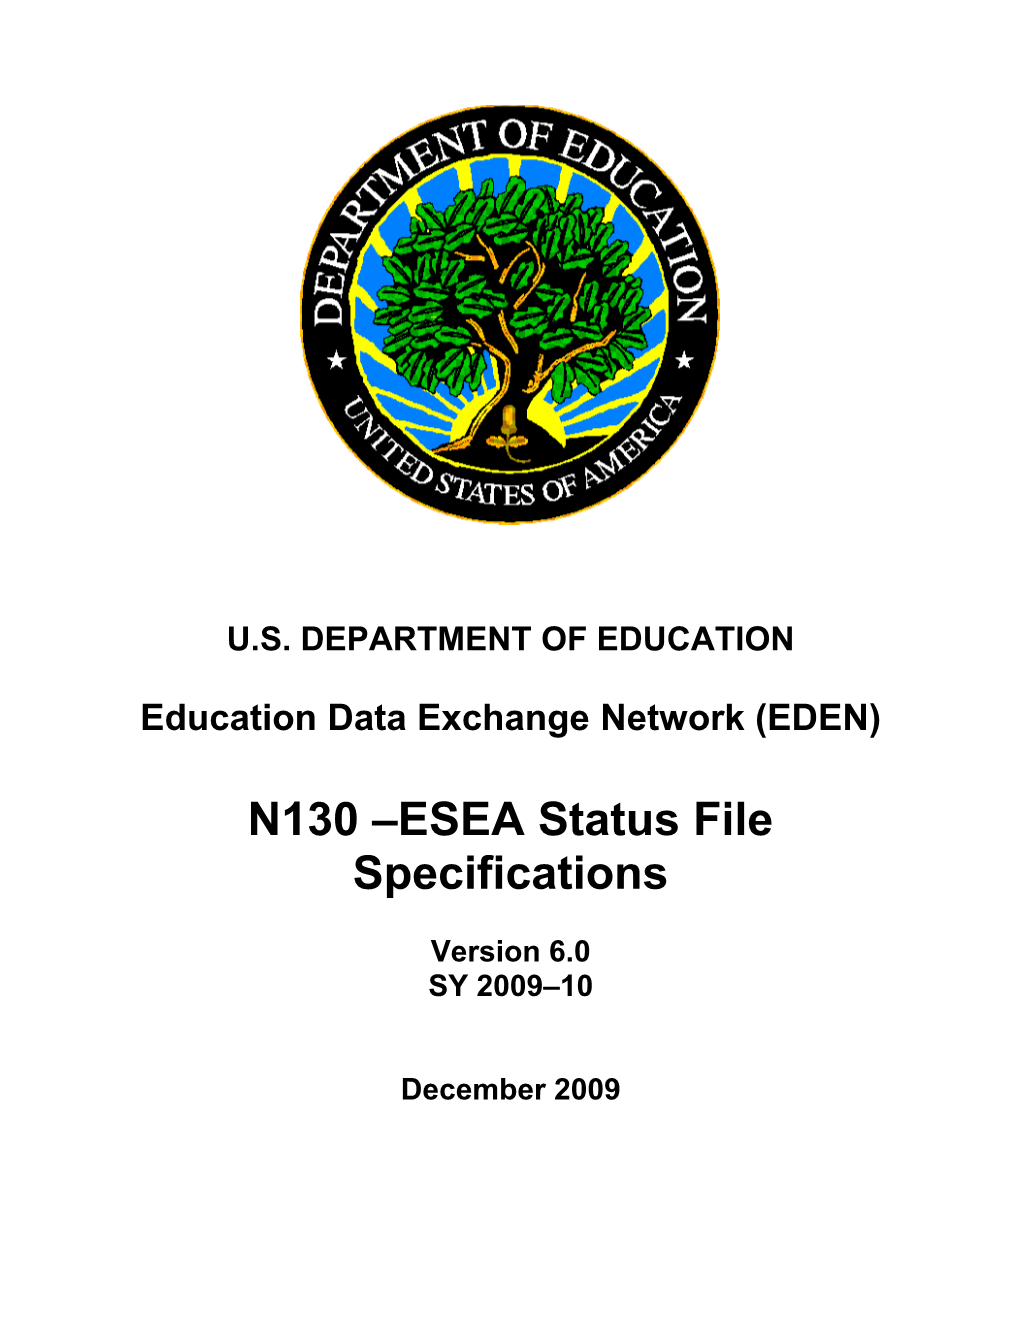 N130 ESEA Status File Specifications (MS Word)